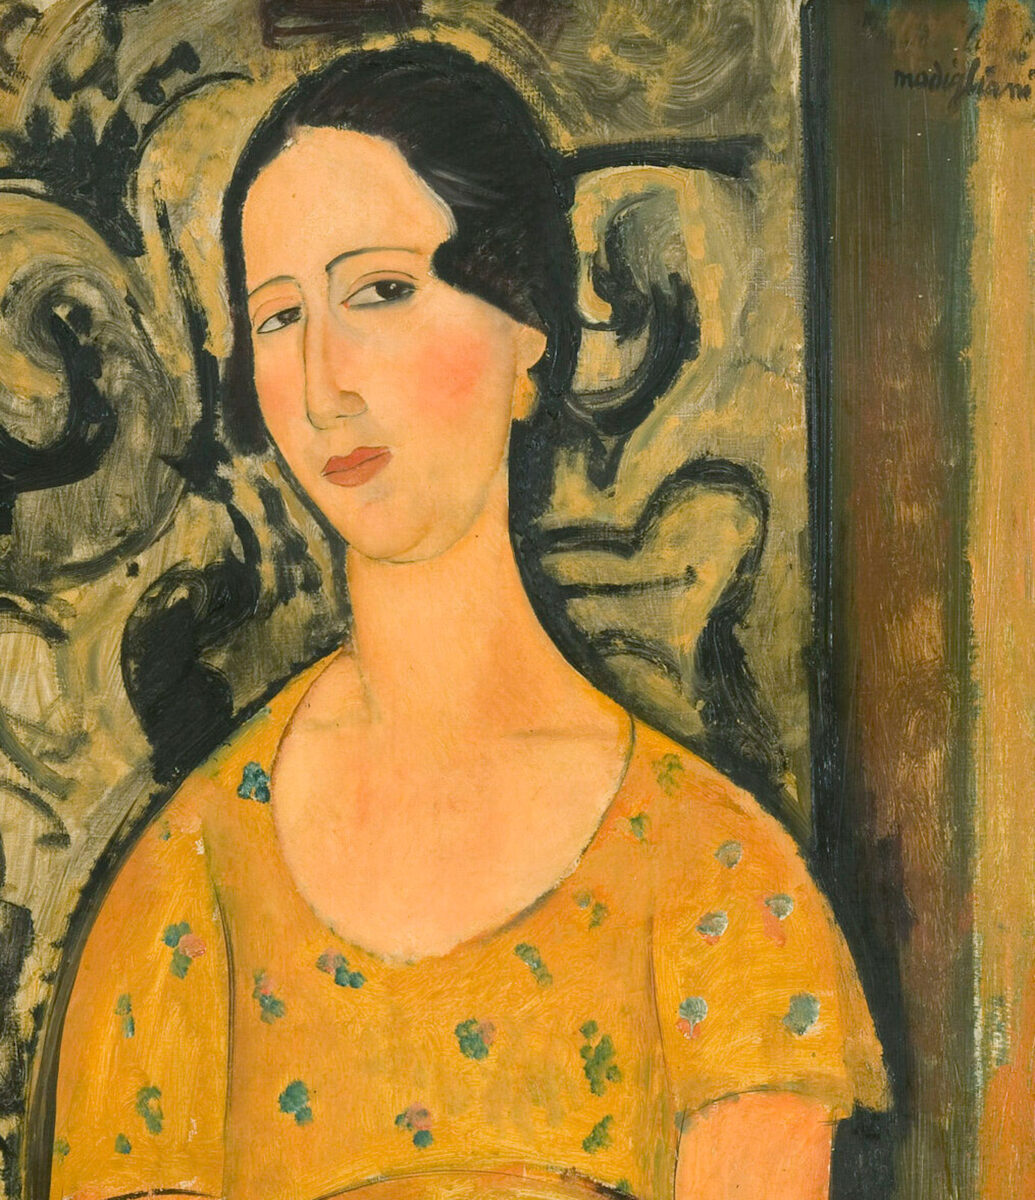 Amedeo Modigliani. Young Woman in a Yellow Dress (Renée Modot), 1918. Collection Fondazione Francesco Federico Cerruti per l’Arte. Long-term loan to Castello di Rivoli, Museo d'Arte Contemporanea, Rivoli-Torino.